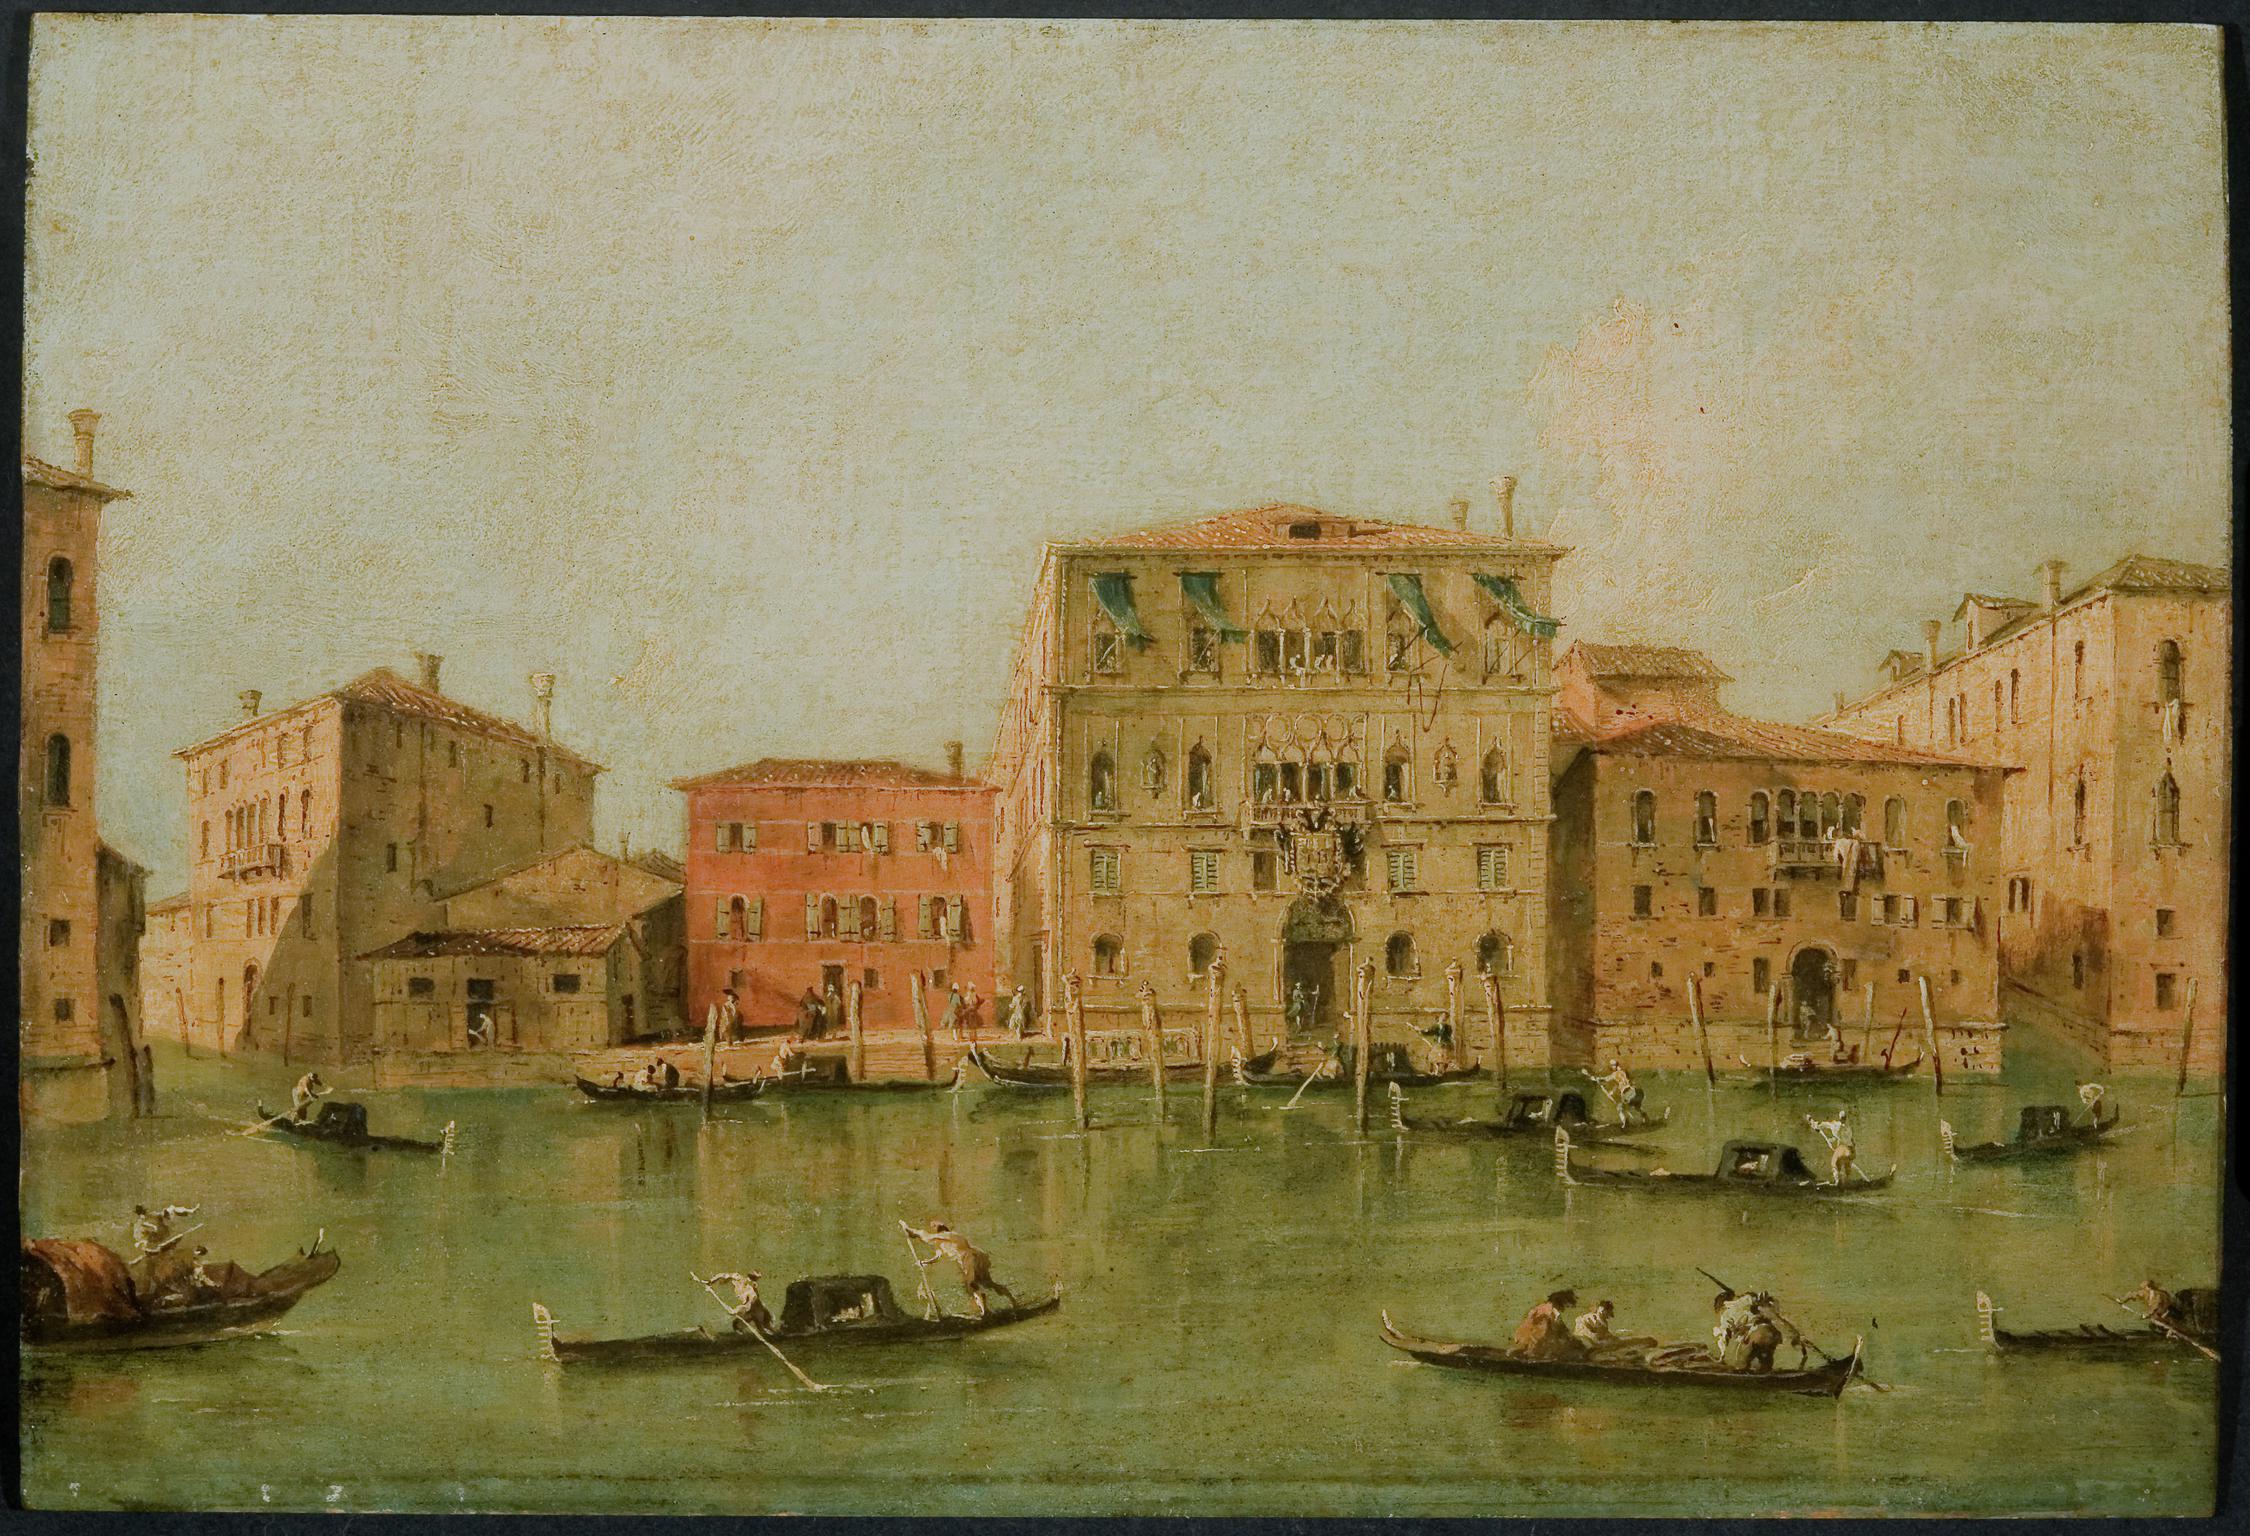 View of the Palazzo Loredan dell'Ambasciatore on the Grand Canal, Venice